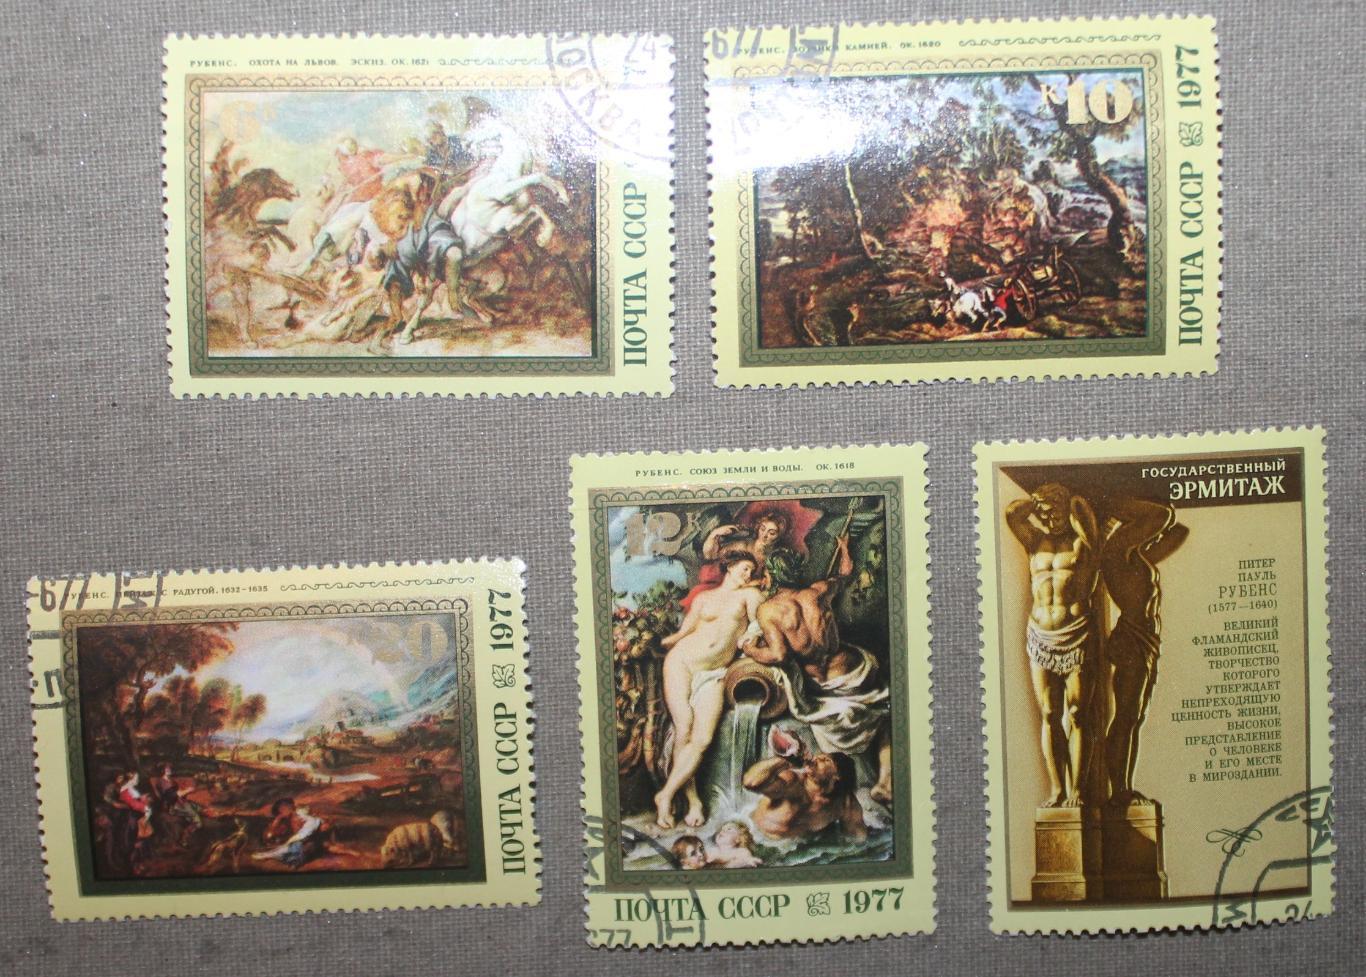 4 марки с купоном из набора 400 лет со дня рождения Рубенса. Почта СССР 1977